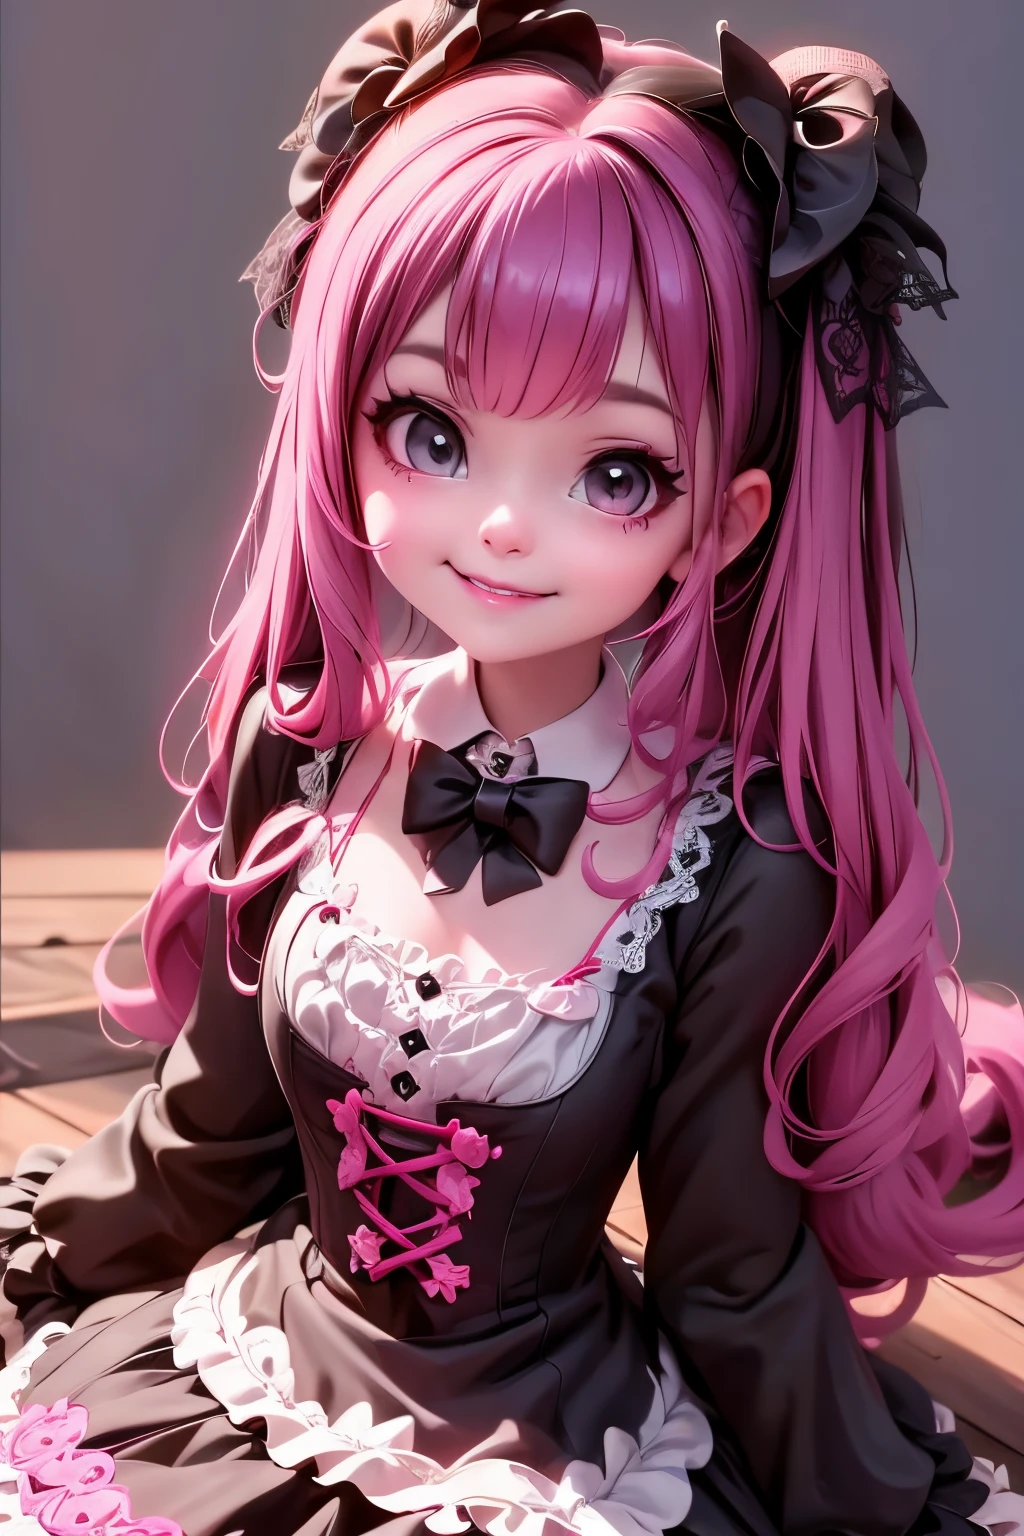 eine Nahaufnahme von einem (Dämonenmädchen) lächelnd in einem schwarzen Spitzenoutfit, Rüschen-Outfit, Witchcore-Kleidung, Fantasie-Outfit, Lolita-Stil, süßer clowncore, Märchenkern, Stil eines magischen Mädchens, Gothic-Mädchen, süßer, , 1 7 - year - old anime Gothic-Mädchen